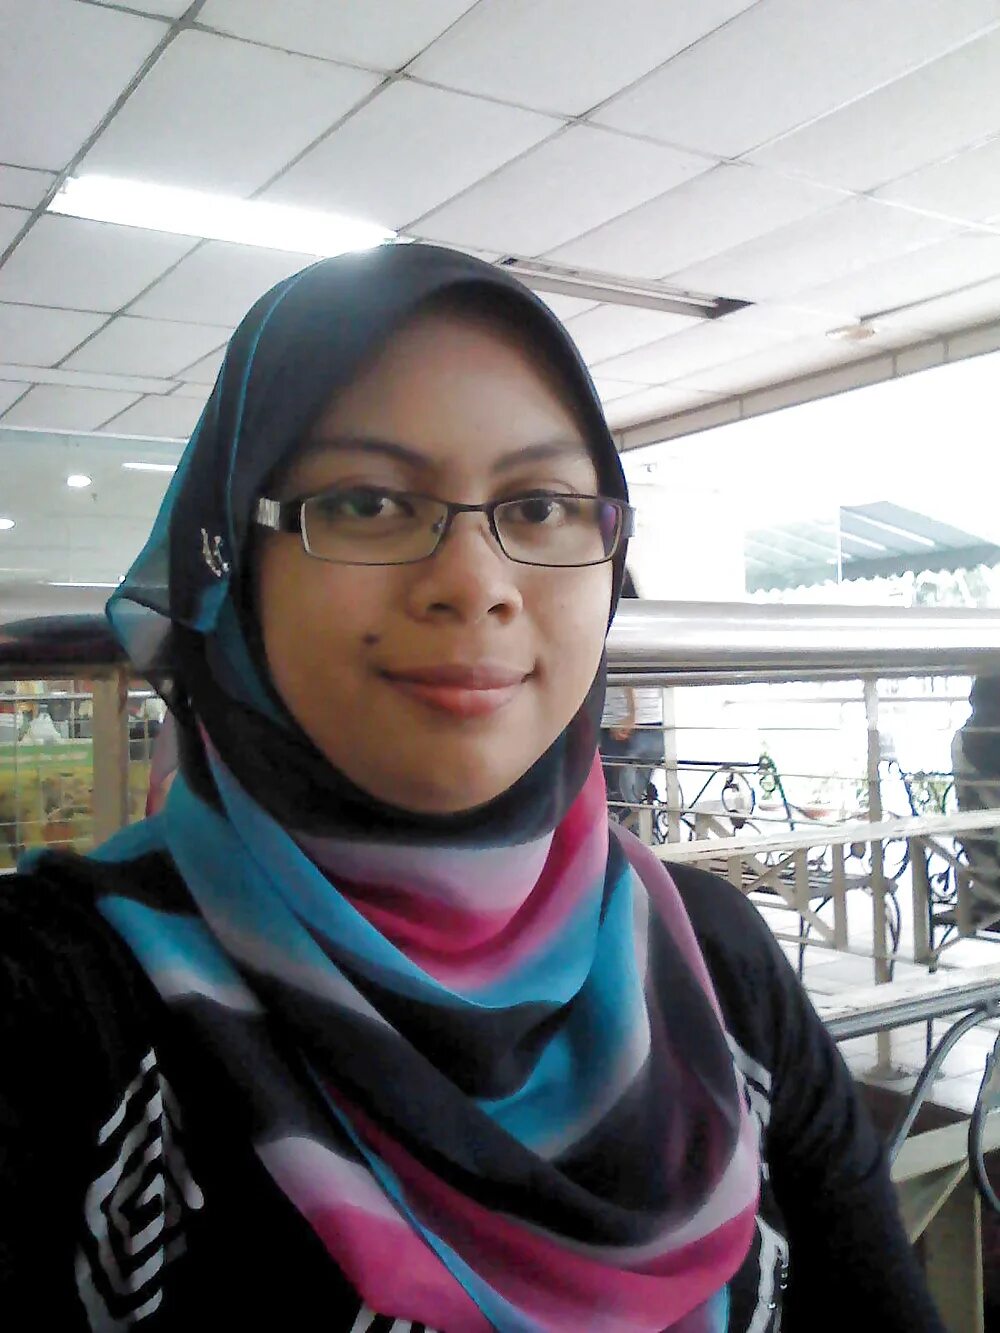 Bokep stw twitter. Malaysia Jilbab. Jilbab smp kacamata. Jilbab Bugil Malay. Jilbab Bugil.